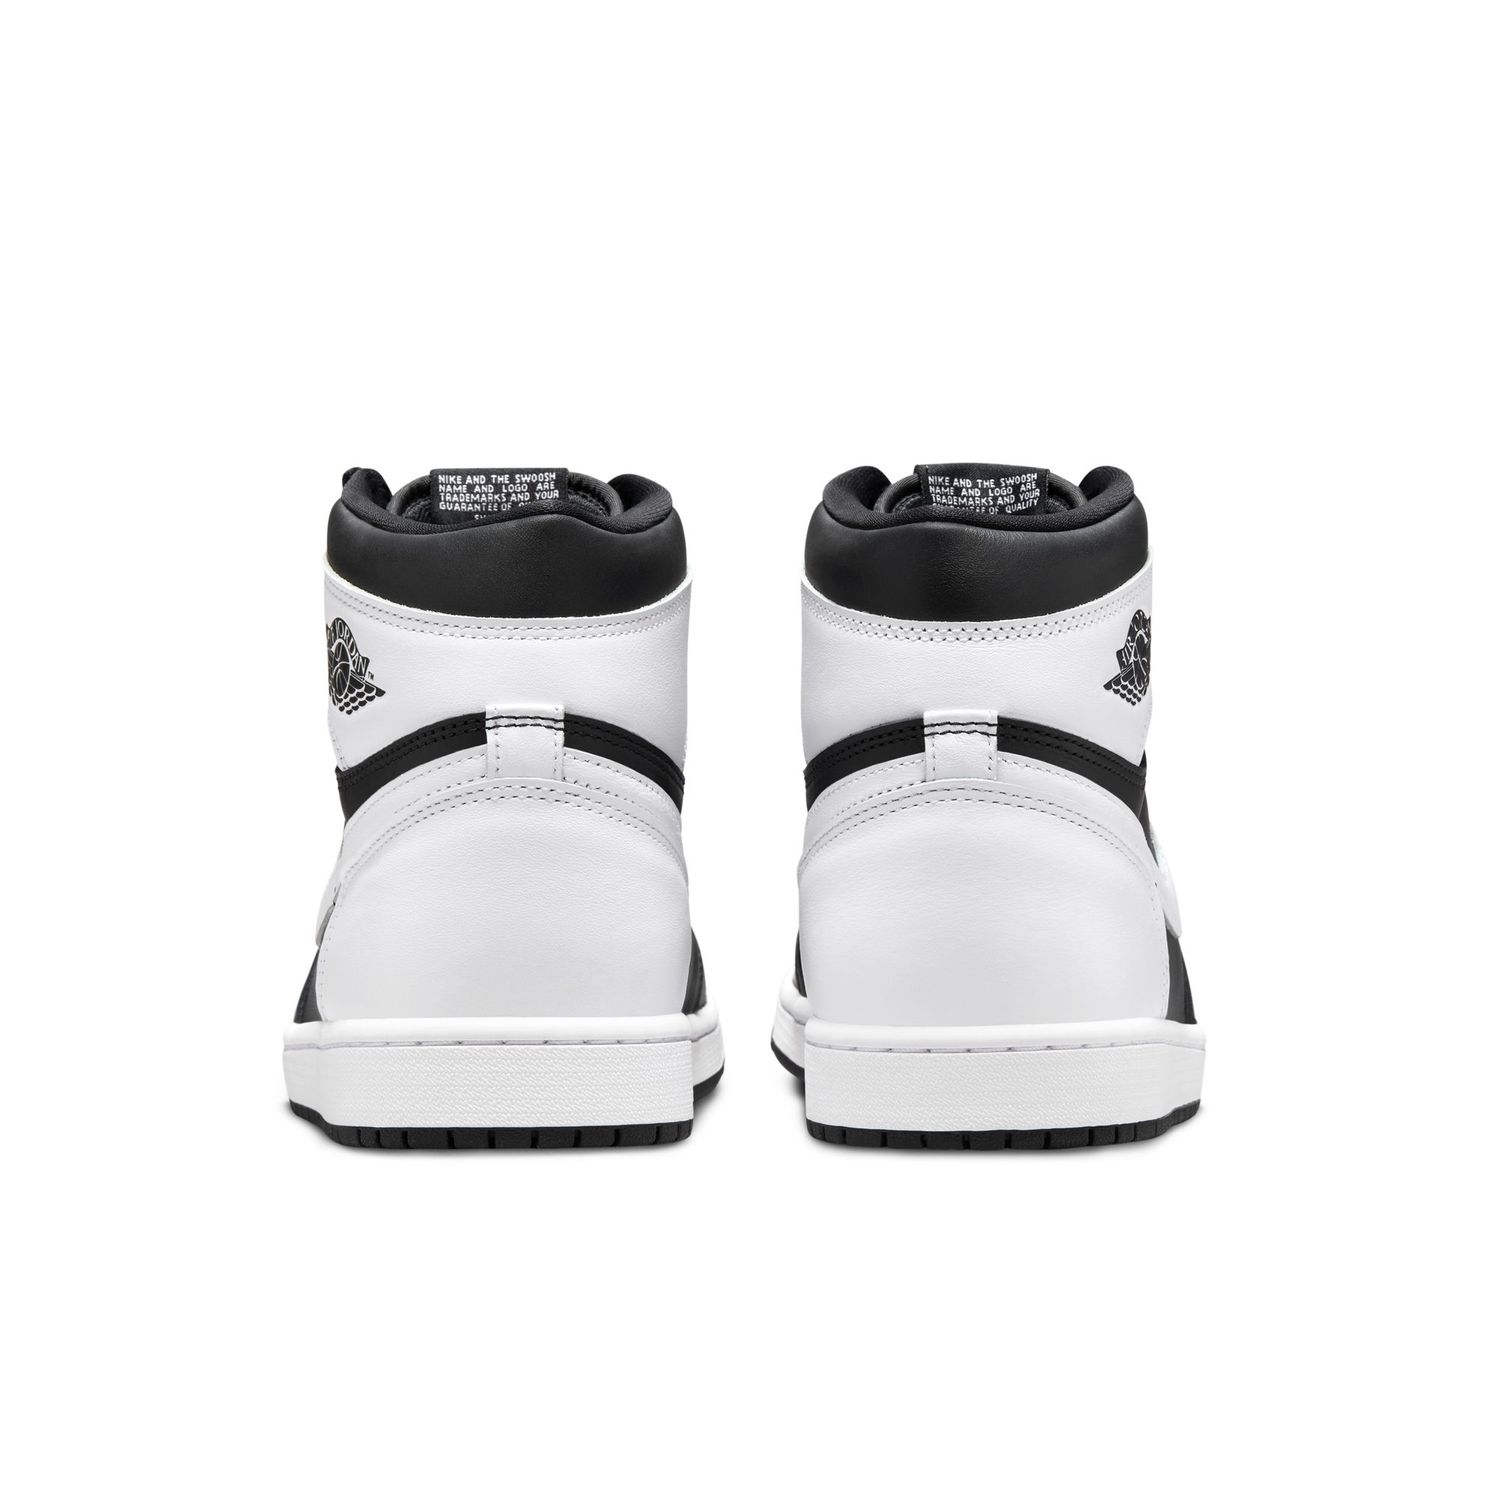 Air Jordan 1 Retro High OG Herren Sneaker